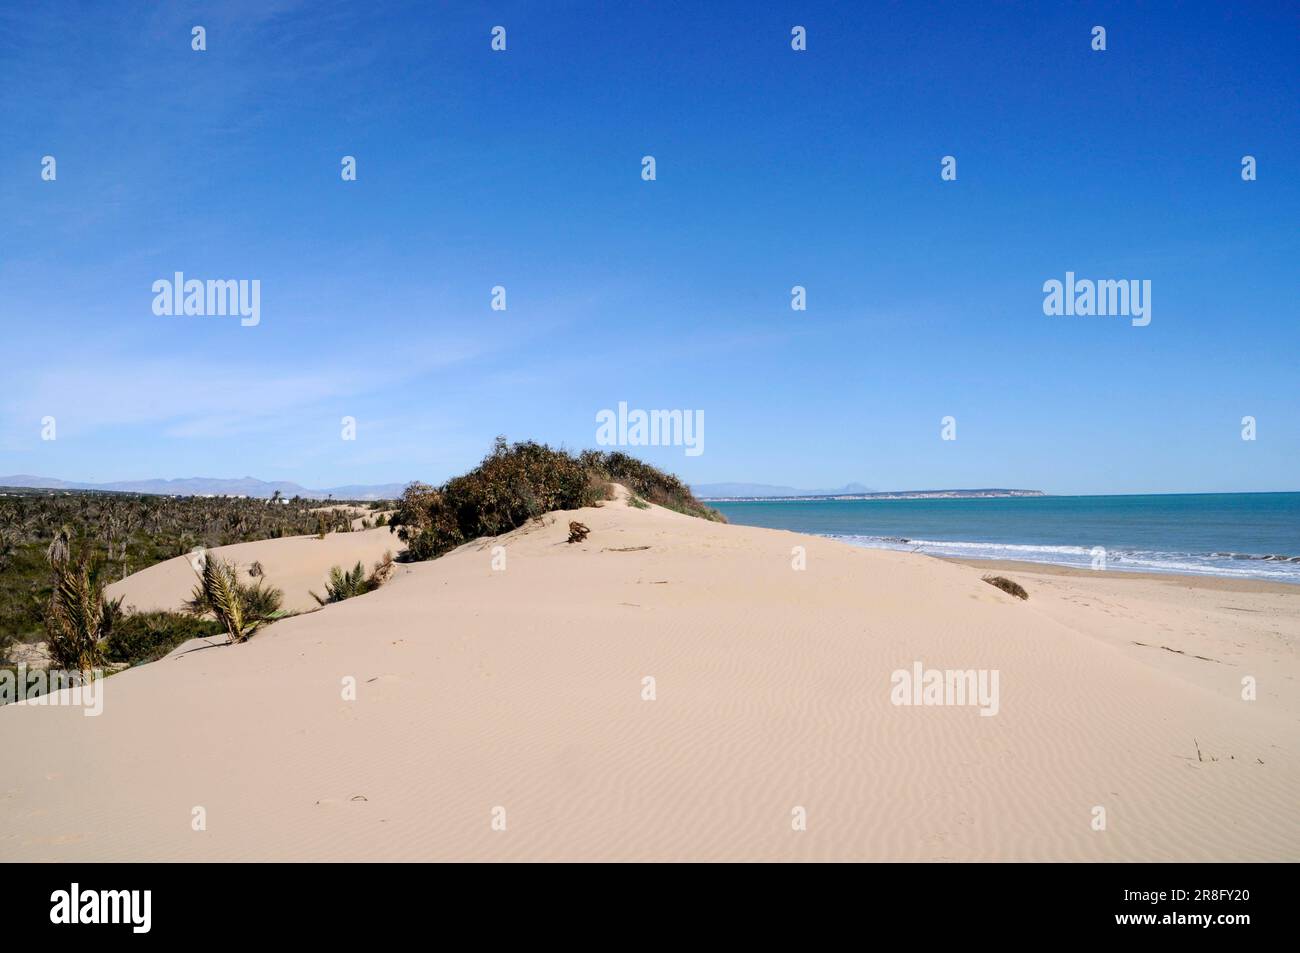 Dunes, Guardamar del Segura, Alicante province, Costa Blanca, Spain Stock Photo